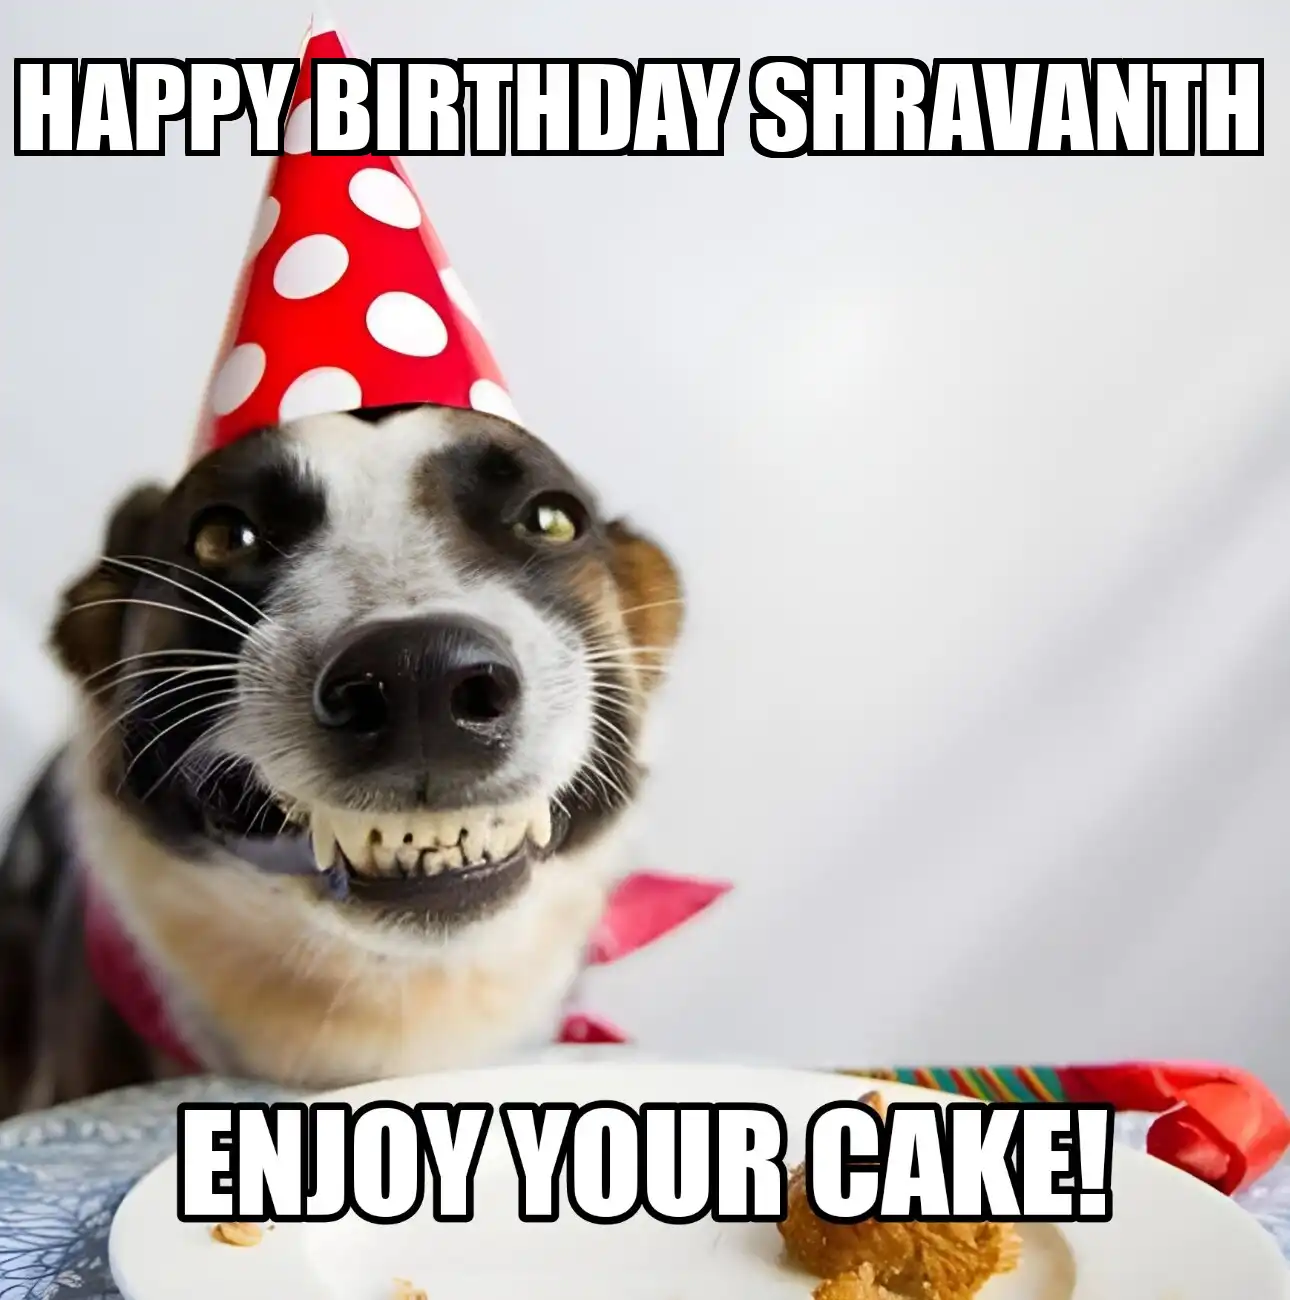 Happy Birthday Shravanth Enjoy Your Cake Dog Meme